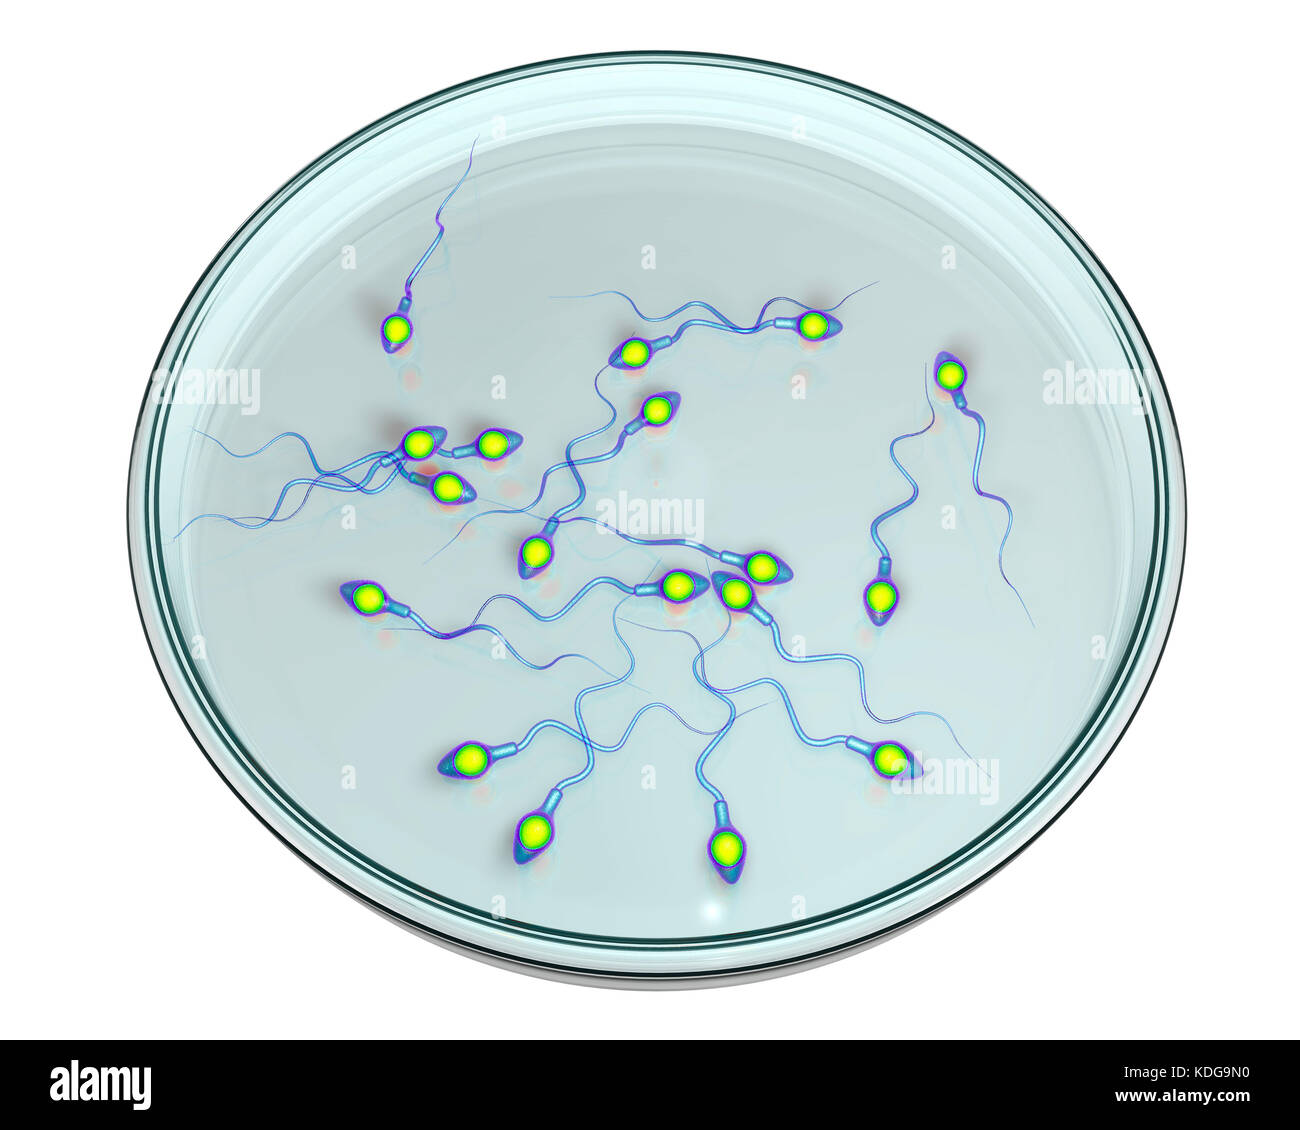 Concepto de fertilización in vitro. Ilustración que muestra el equipo en una caja de petri spermatozoans esperando a ser utilizado para fertilizar un óvulo. Foto de stock